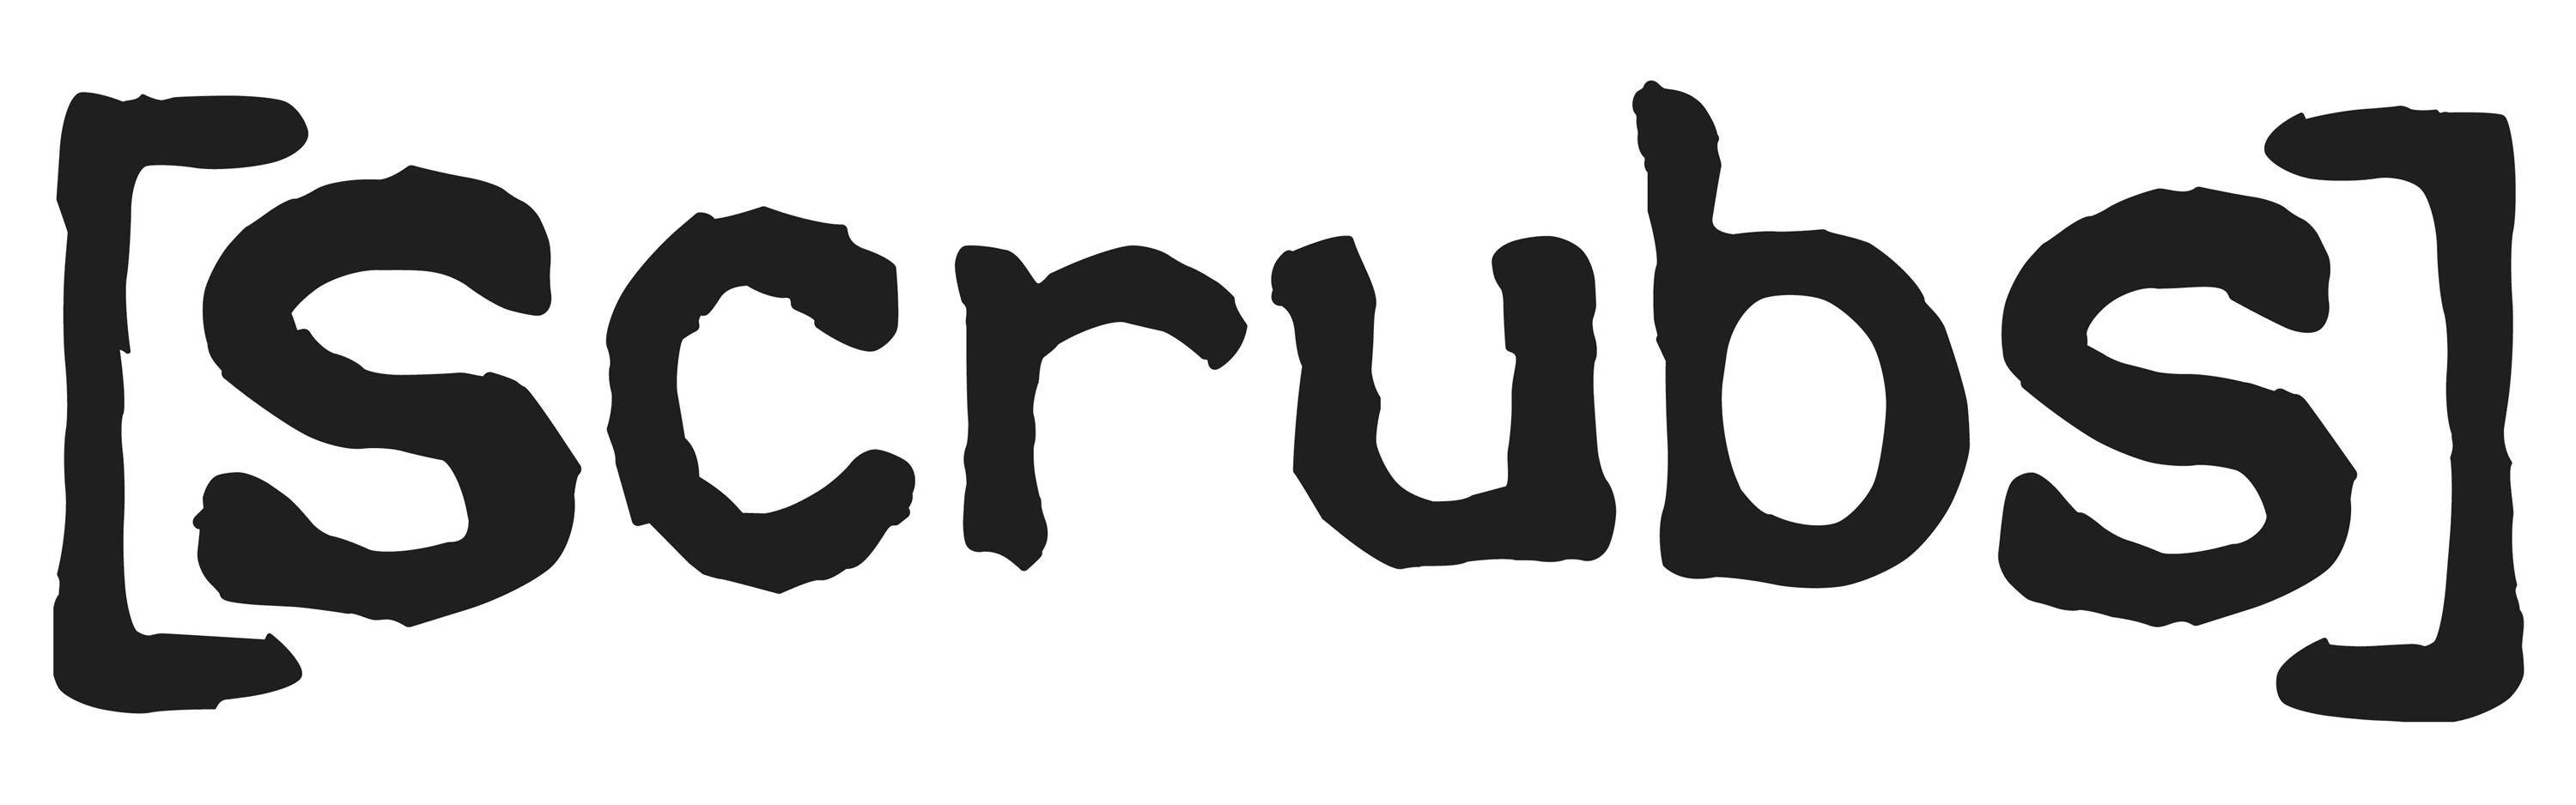 Scrubs Logo - Scrubs Logos